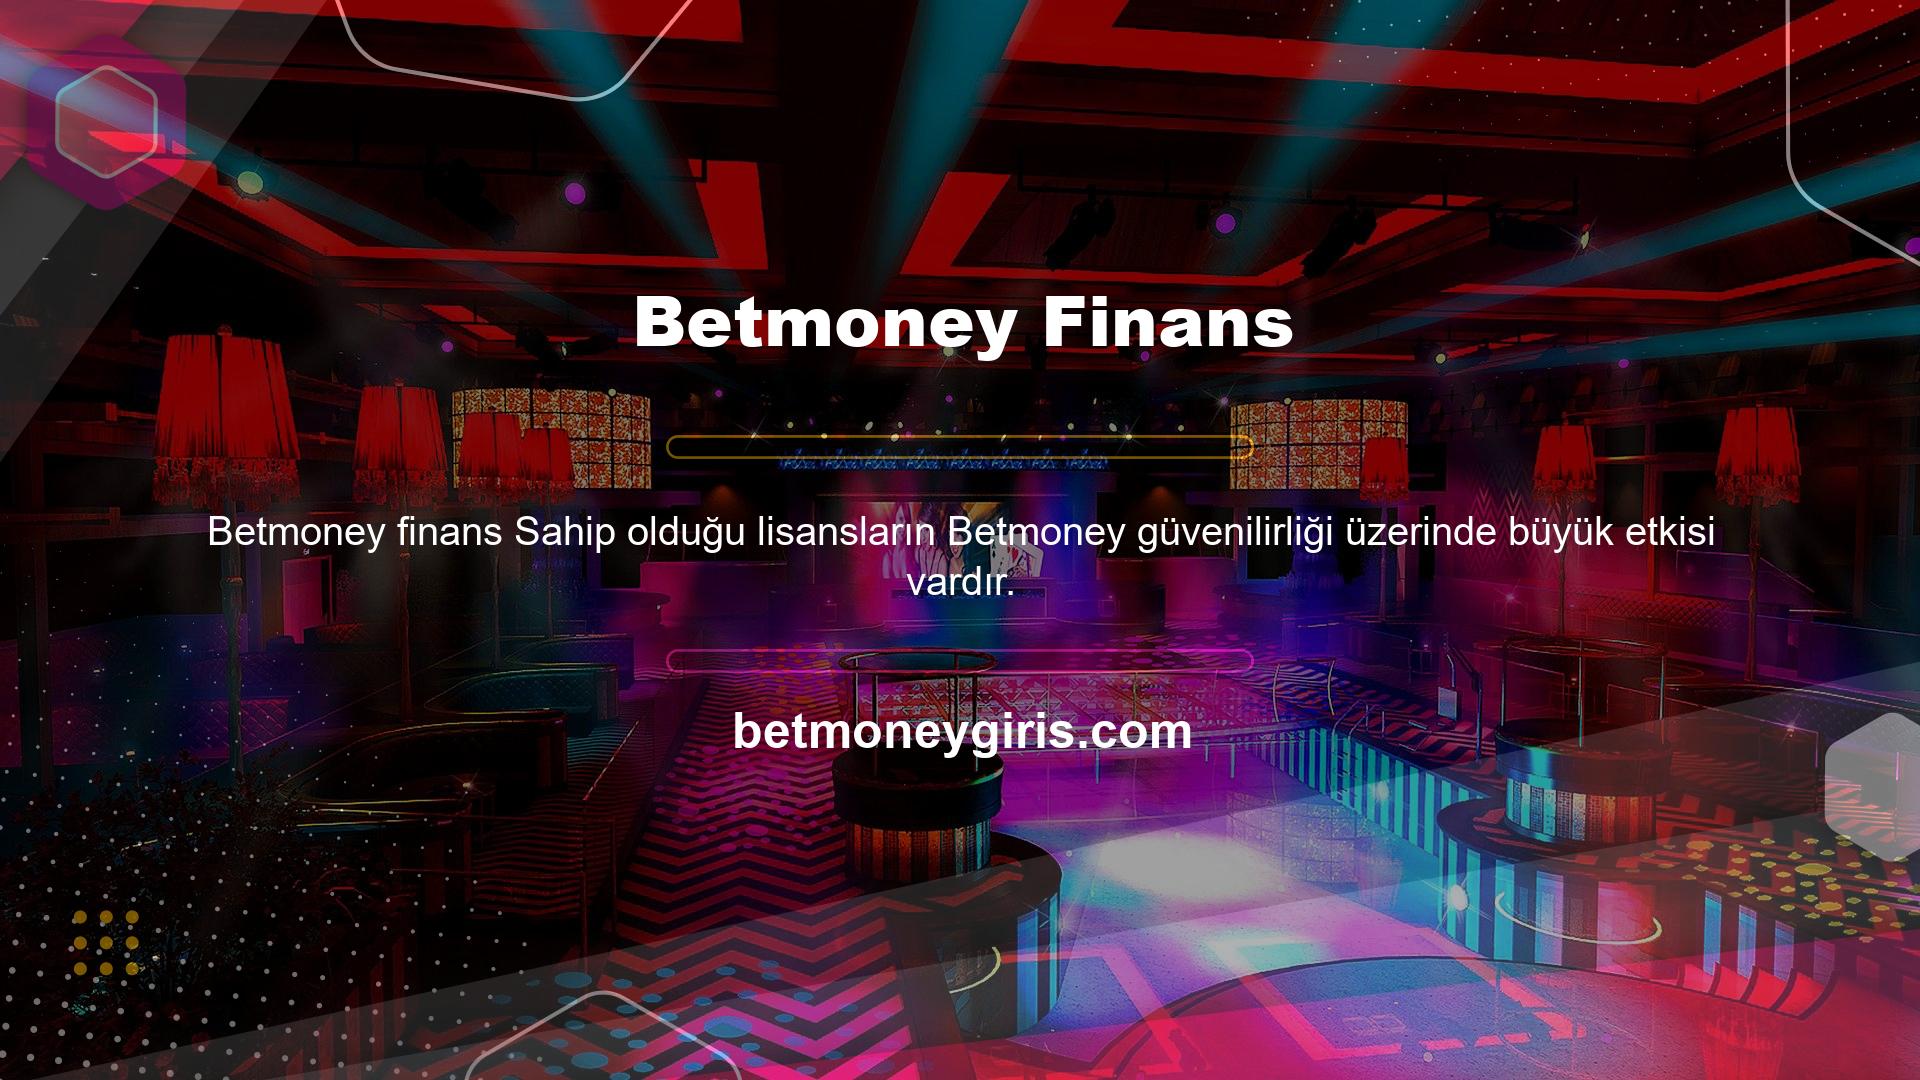 Betmoney Finans